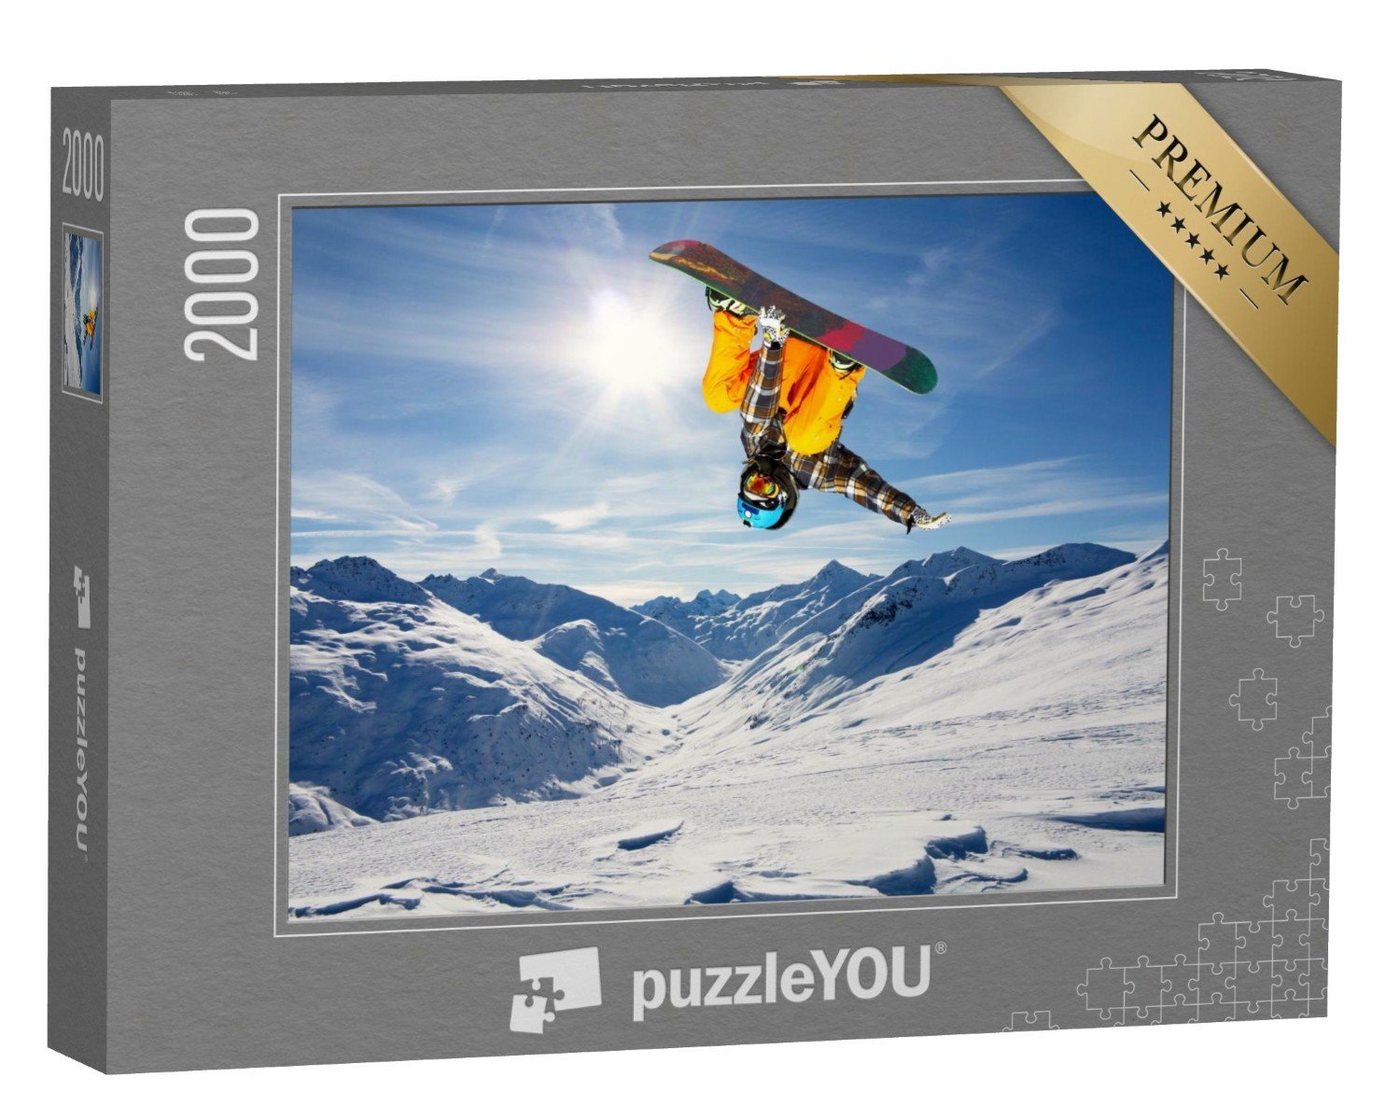 puzzleYOU Puzzle Snowborder beim spektakulären Sprung, 2000 Puzzleteile, puzzleYOU-Kollektionen Sport, Menschen von puzzleYOU